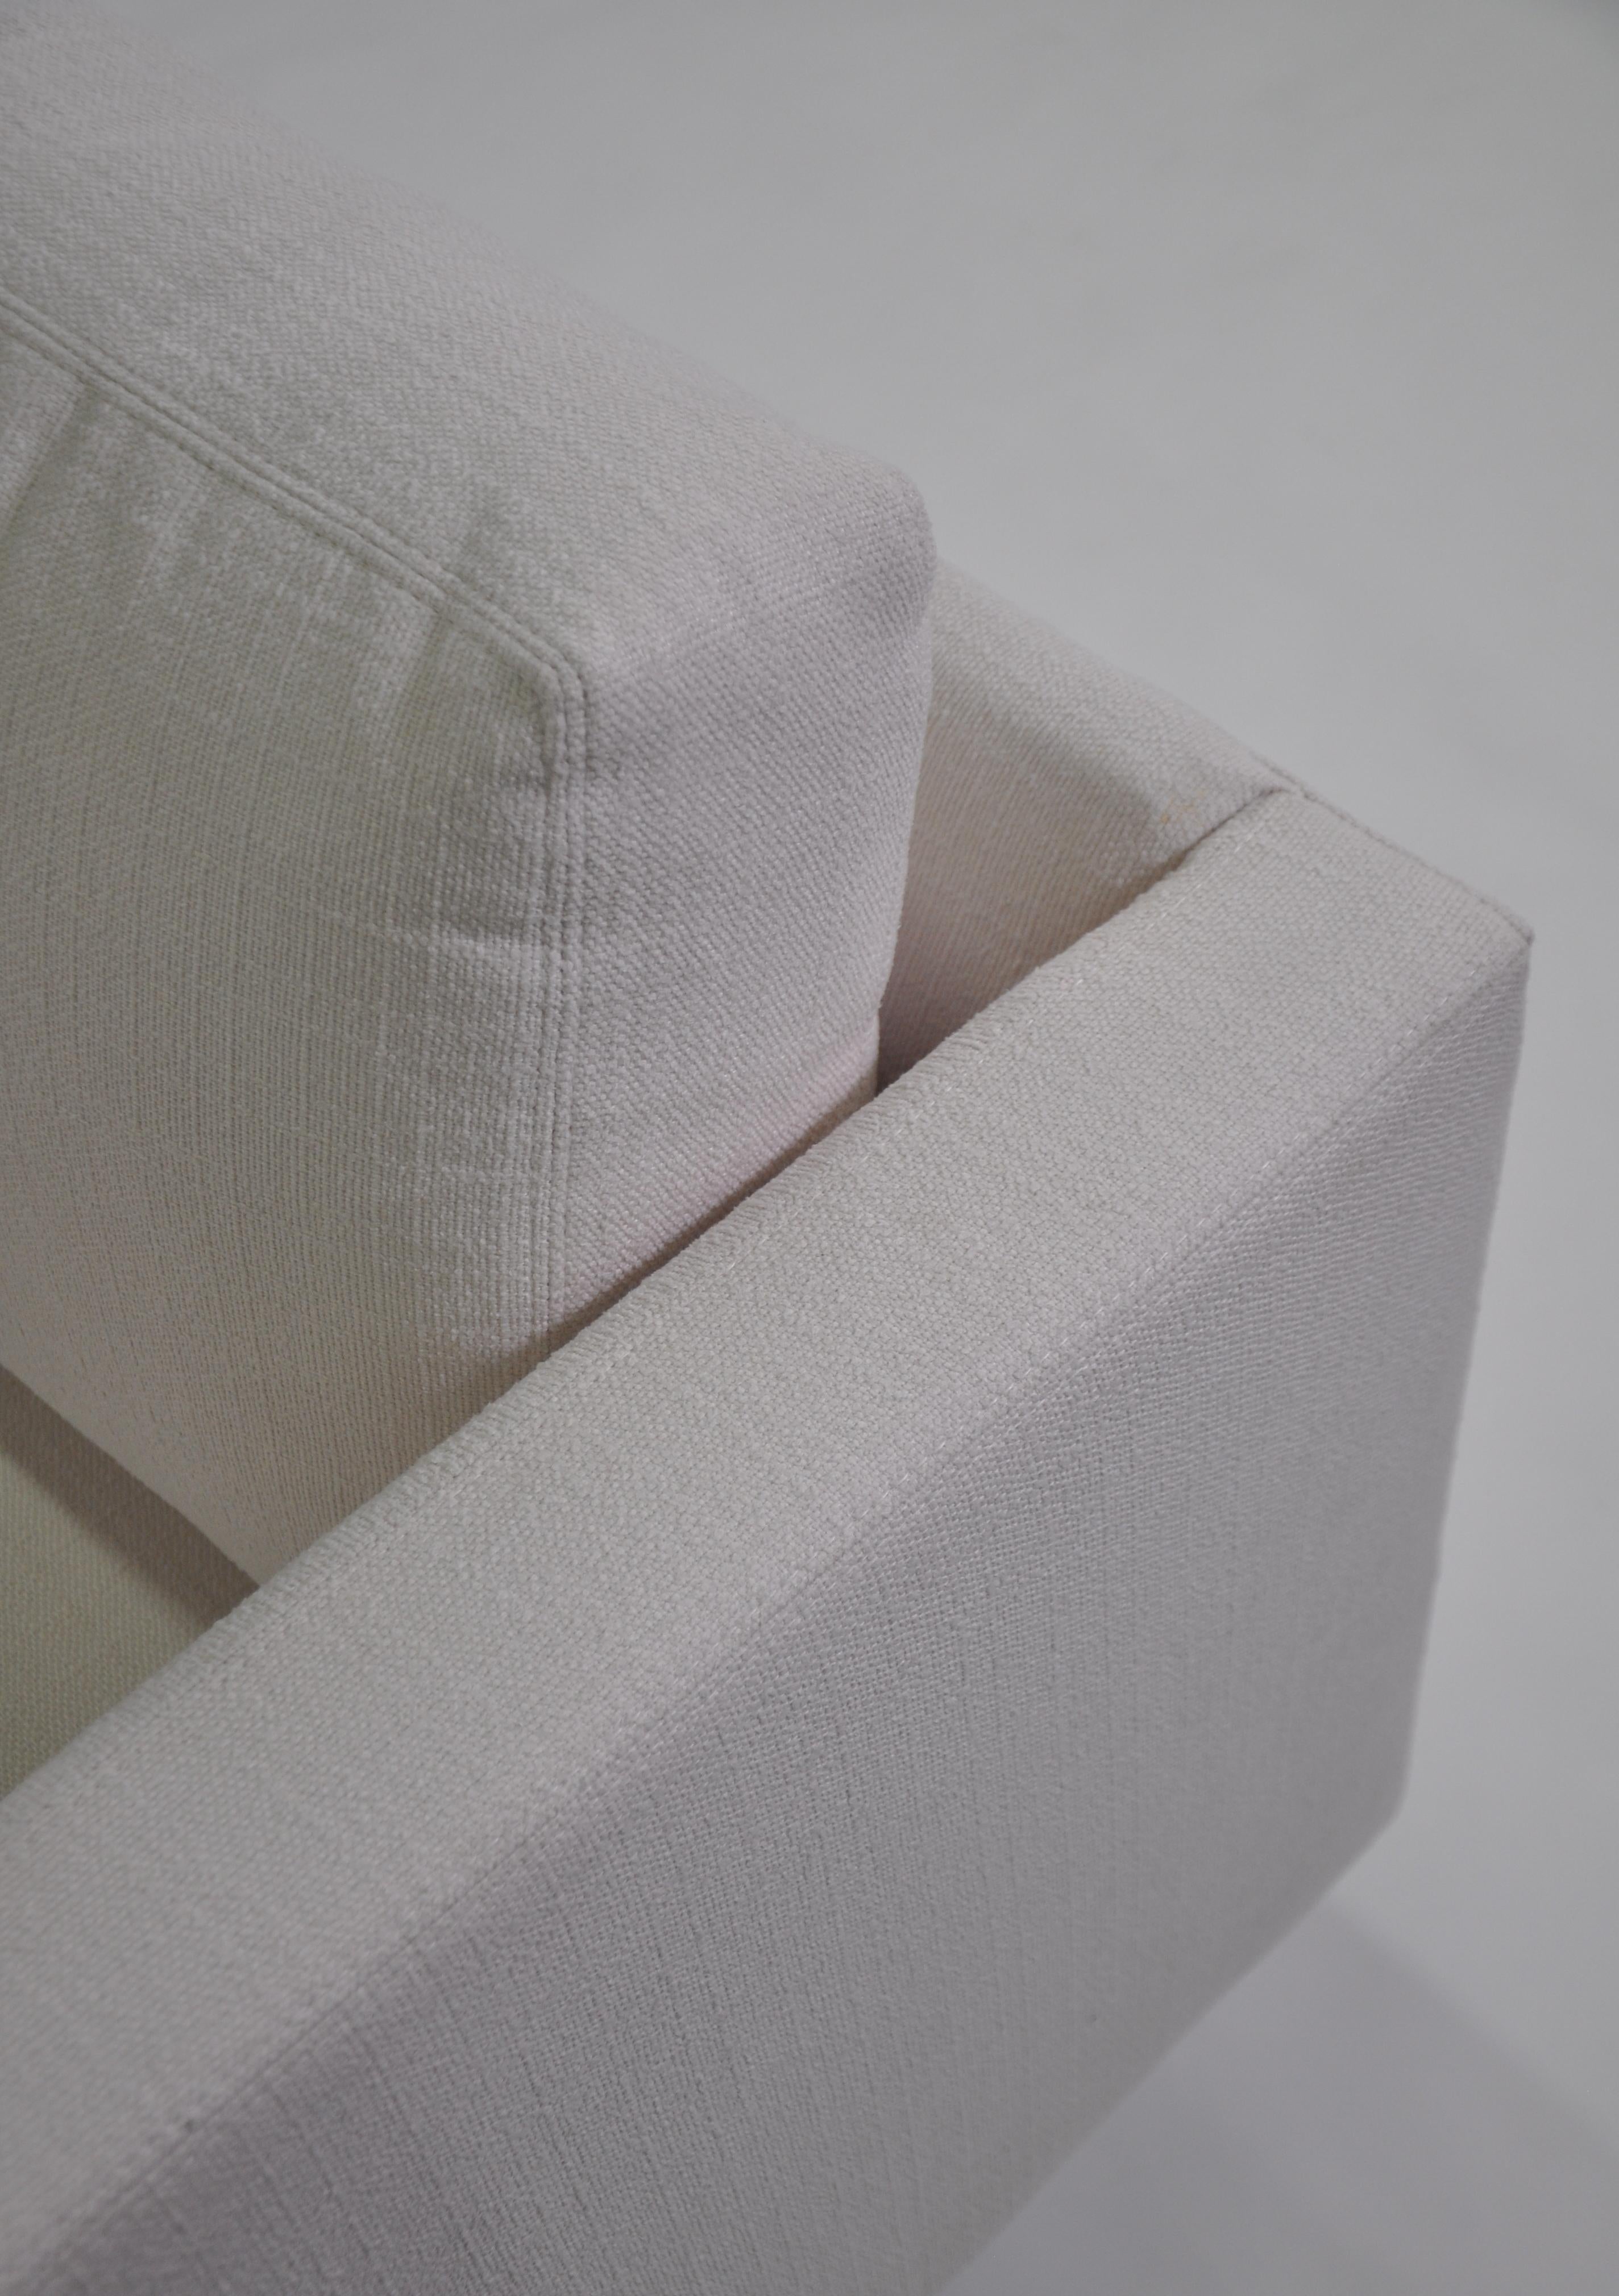 Milo Baughman White Sofa, Thayer Coggin 855 Design Classic 2